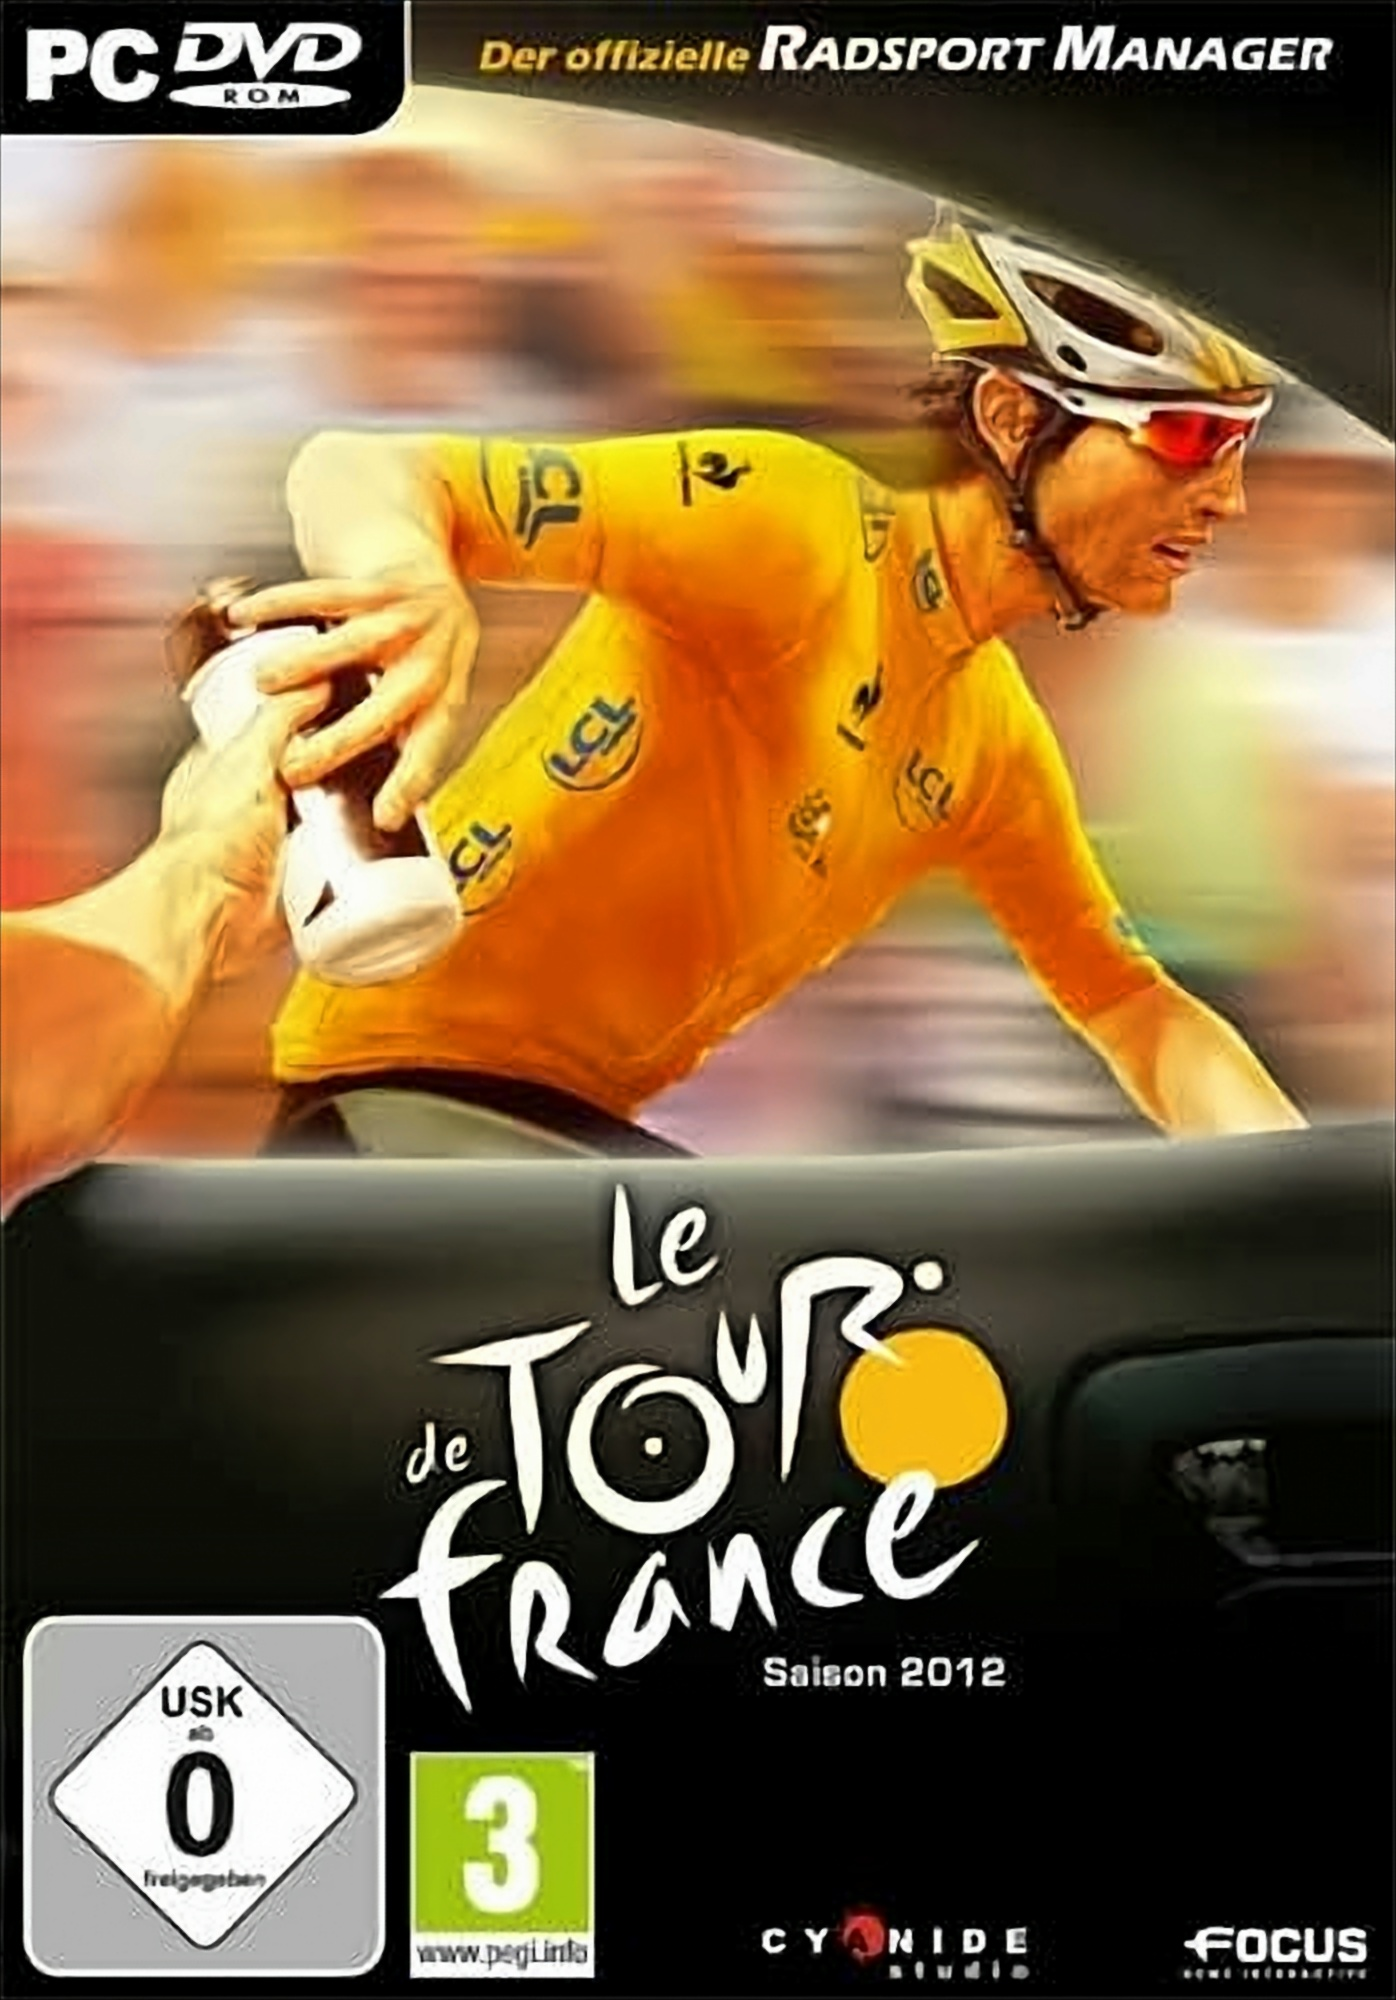 Le Tour Der Radsport offizielle - France 2012 [PC] - de Manager